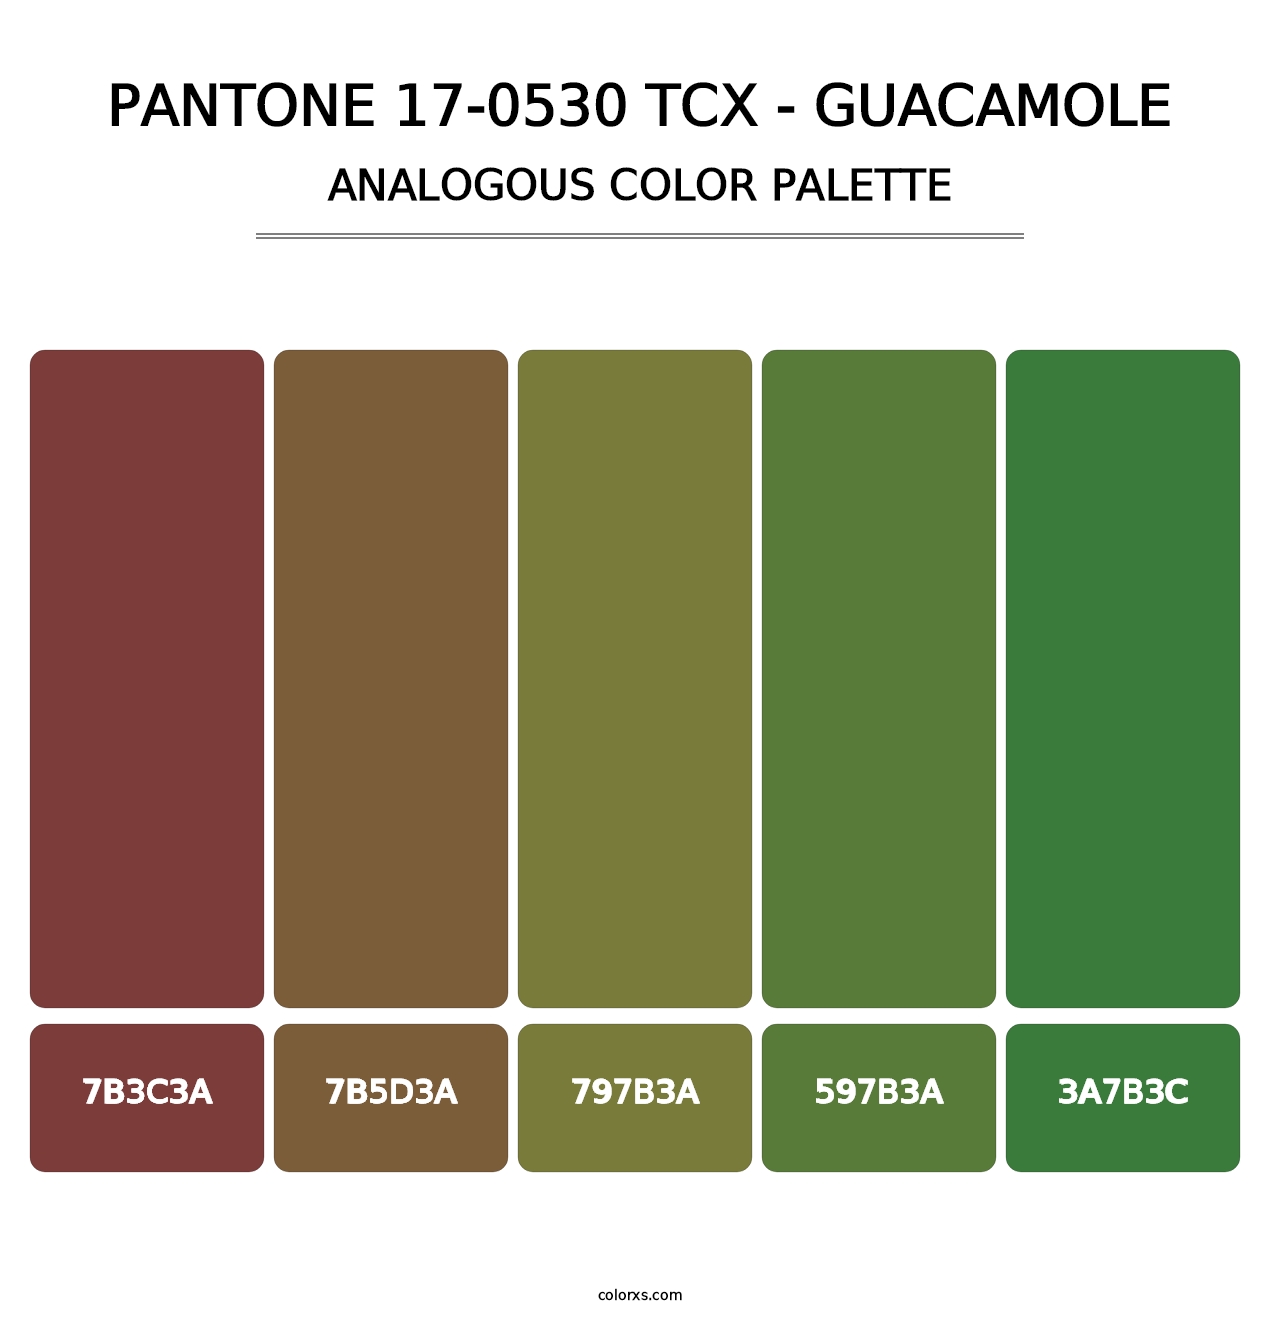 PANTONE 17-0530 TCX - Guacamole - Analogous Color Palette